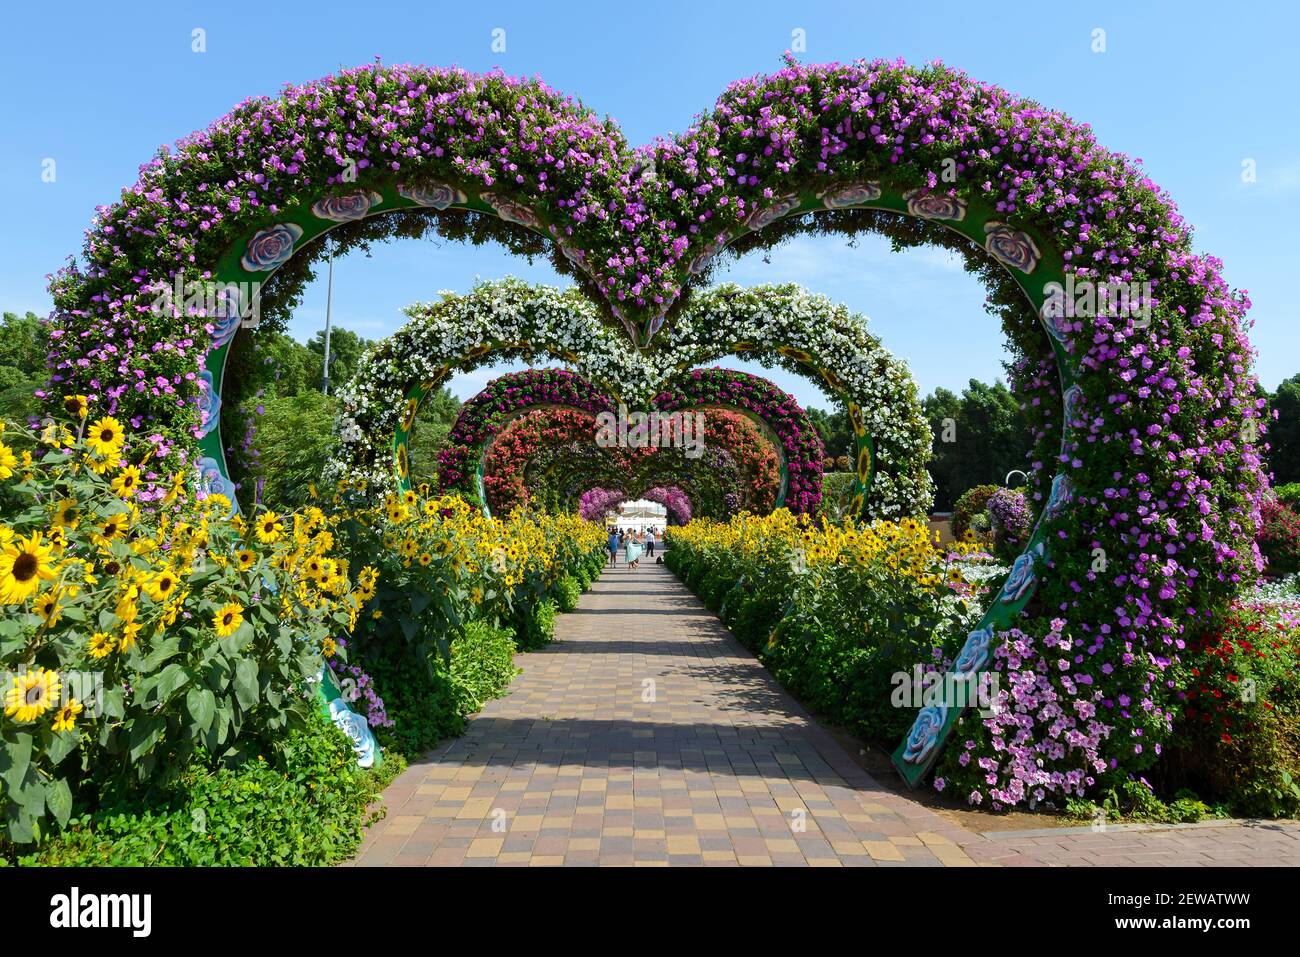 Flower Hearts Passage en Dubai Miracle Garden, un pasaje de flores situado en Dubailand, Dubai, Emiratos Árabes Unidos. Túnel de flores en forma de corazón. Foto de stock